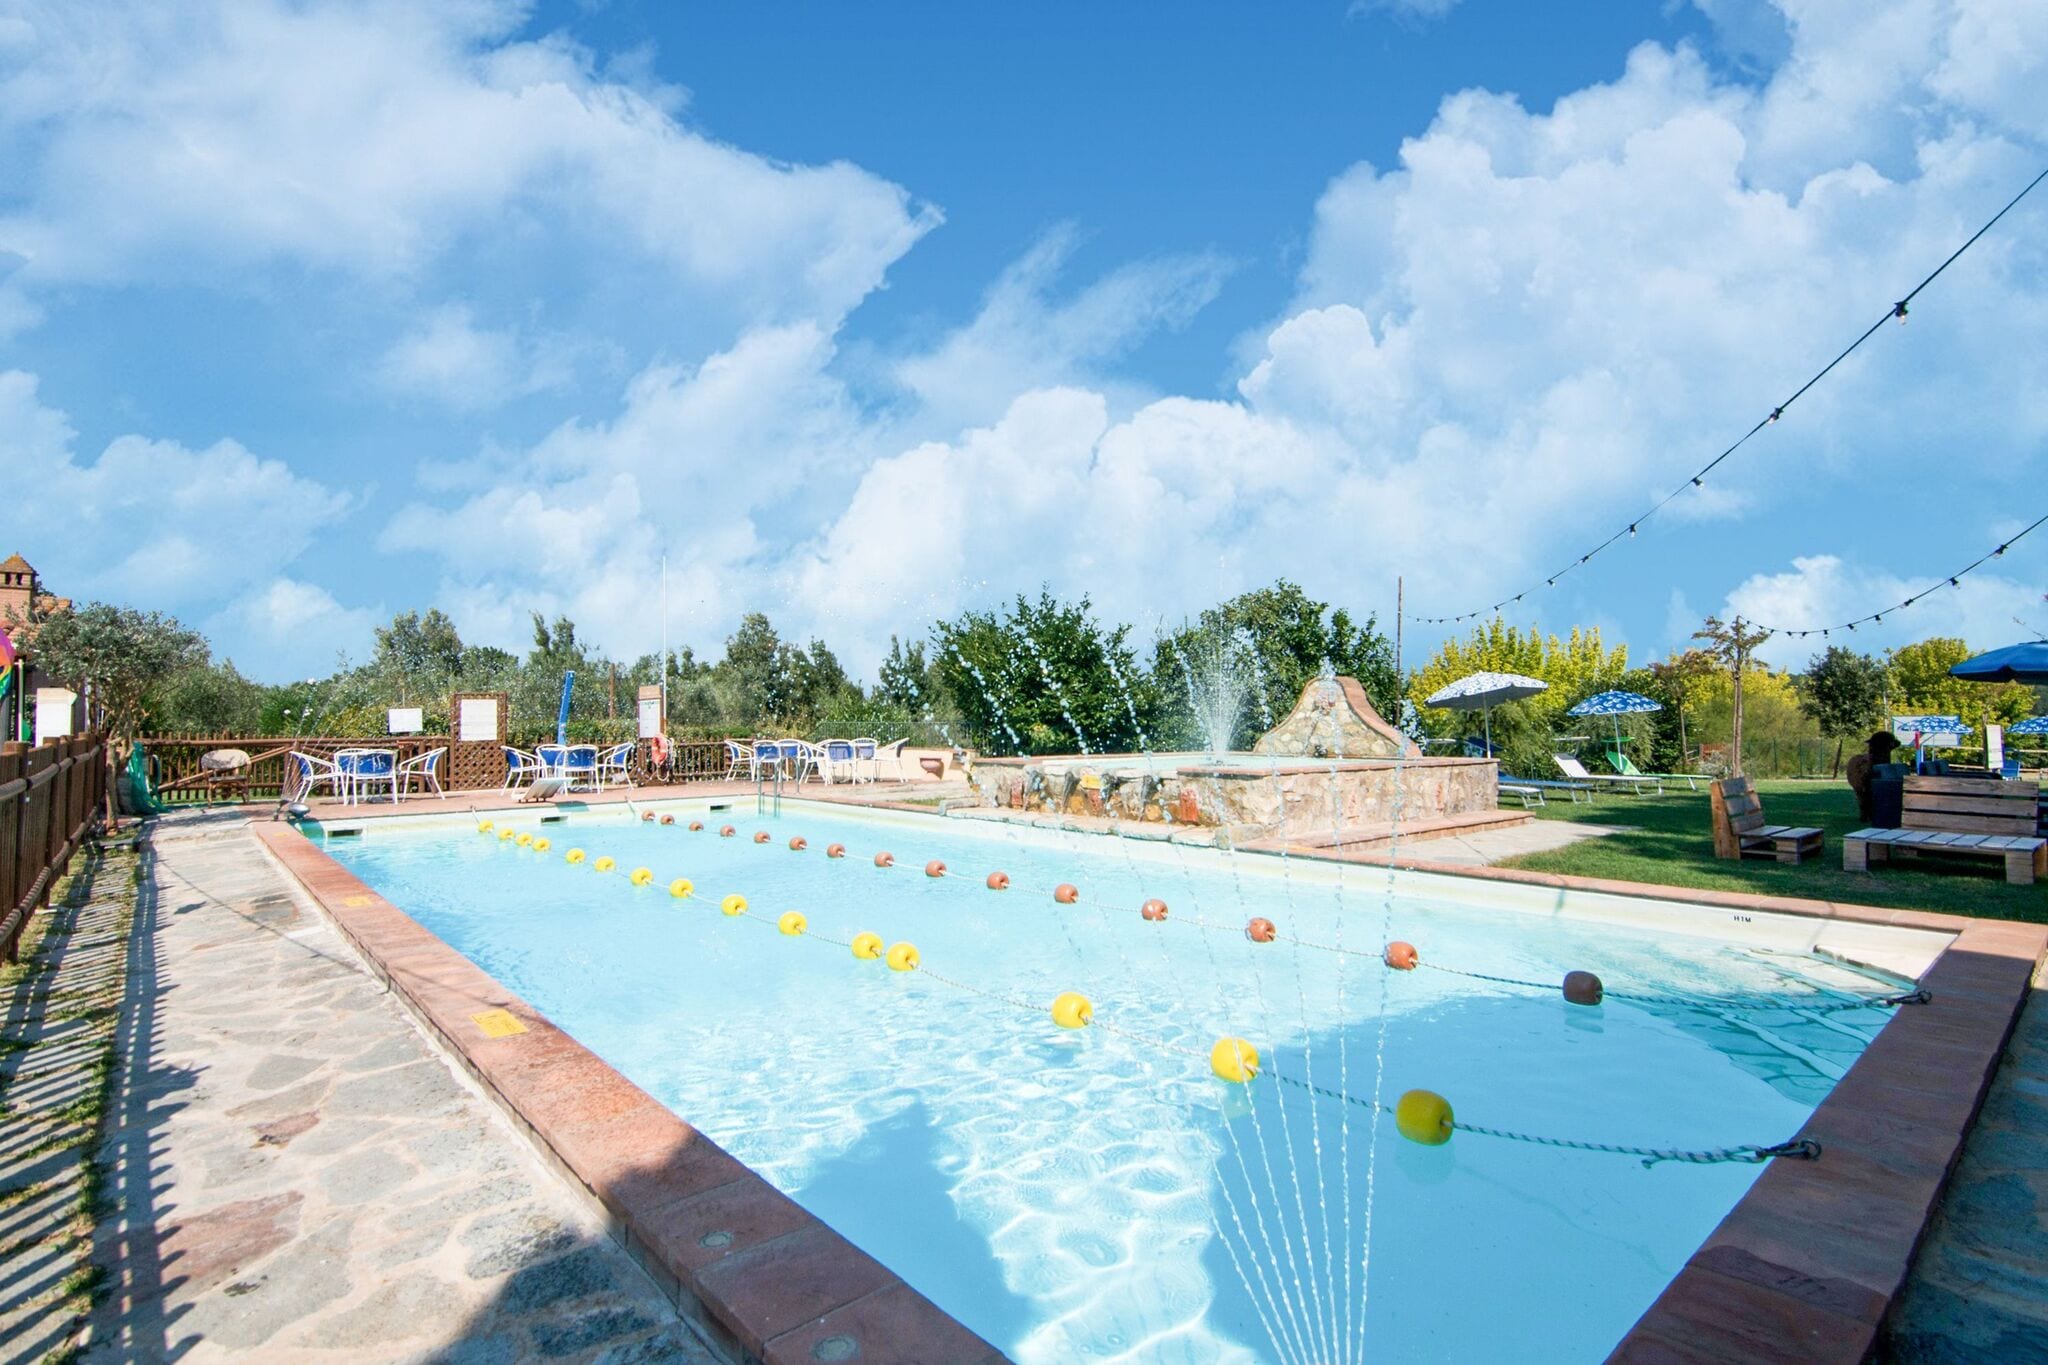 Vakantiehuis dichtbij het Trasimeno meer, twee zwembaden en wellness ruimte